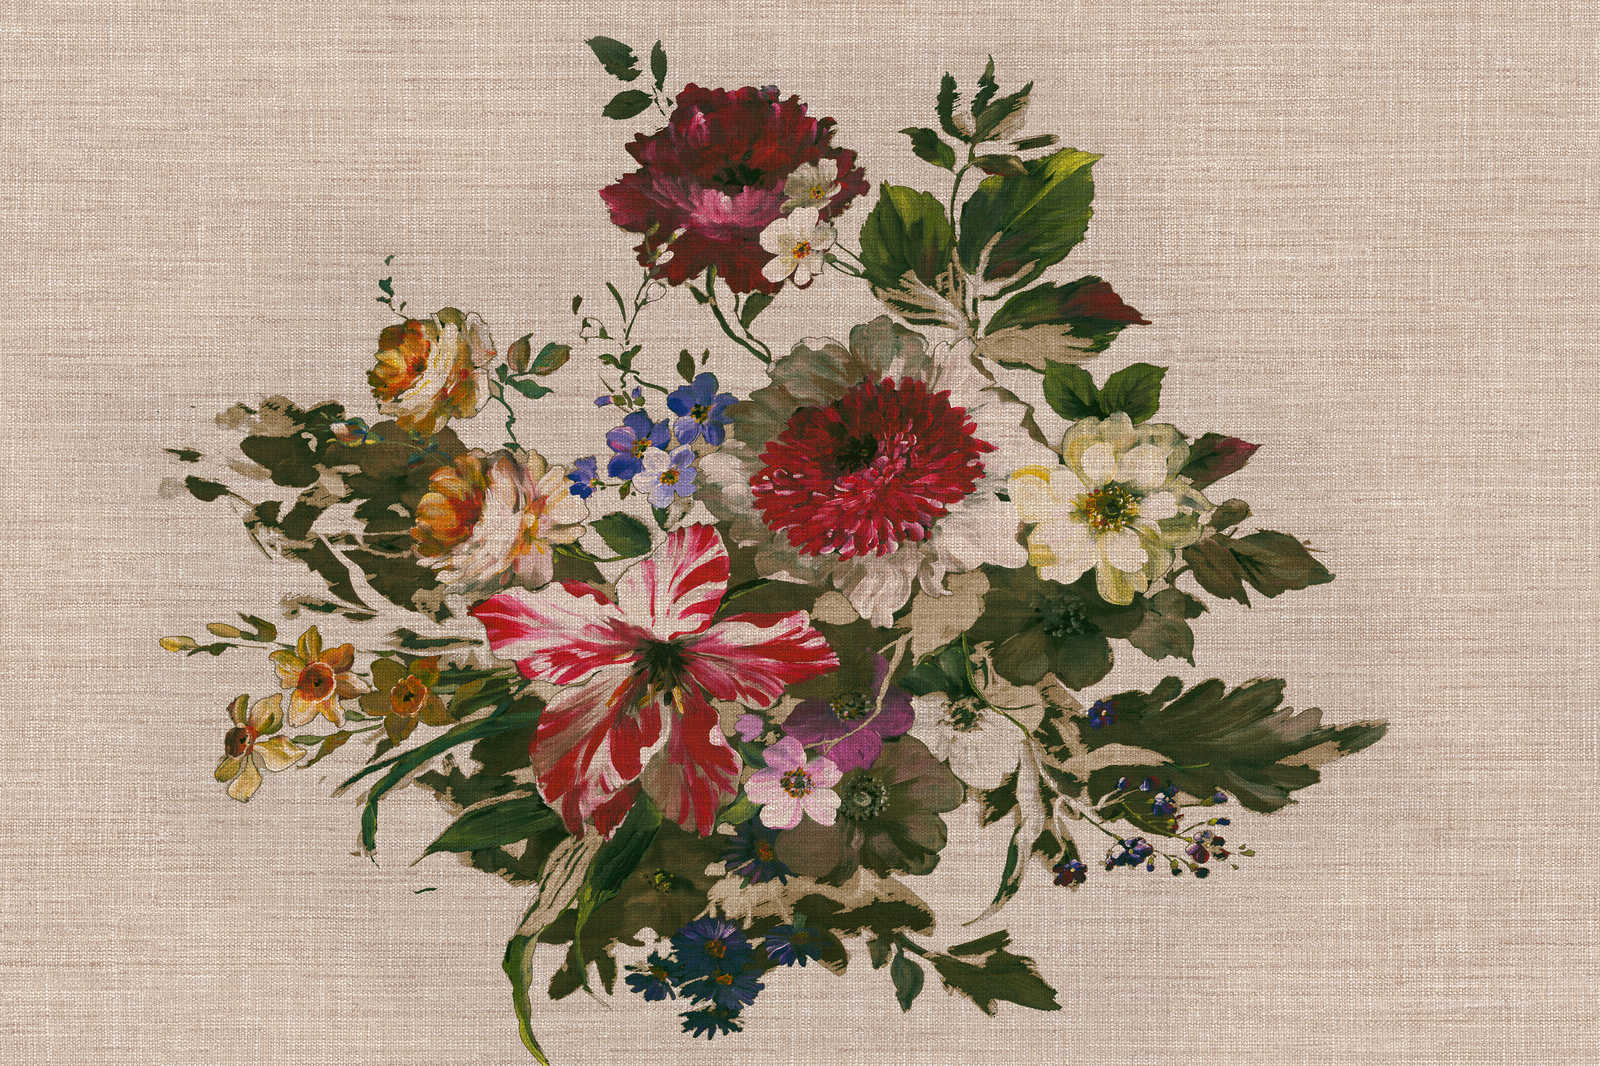             Canvas schilderij beschilderde bloemen vintage stijl & linnen look - 0,90 m x 0,60 m
        